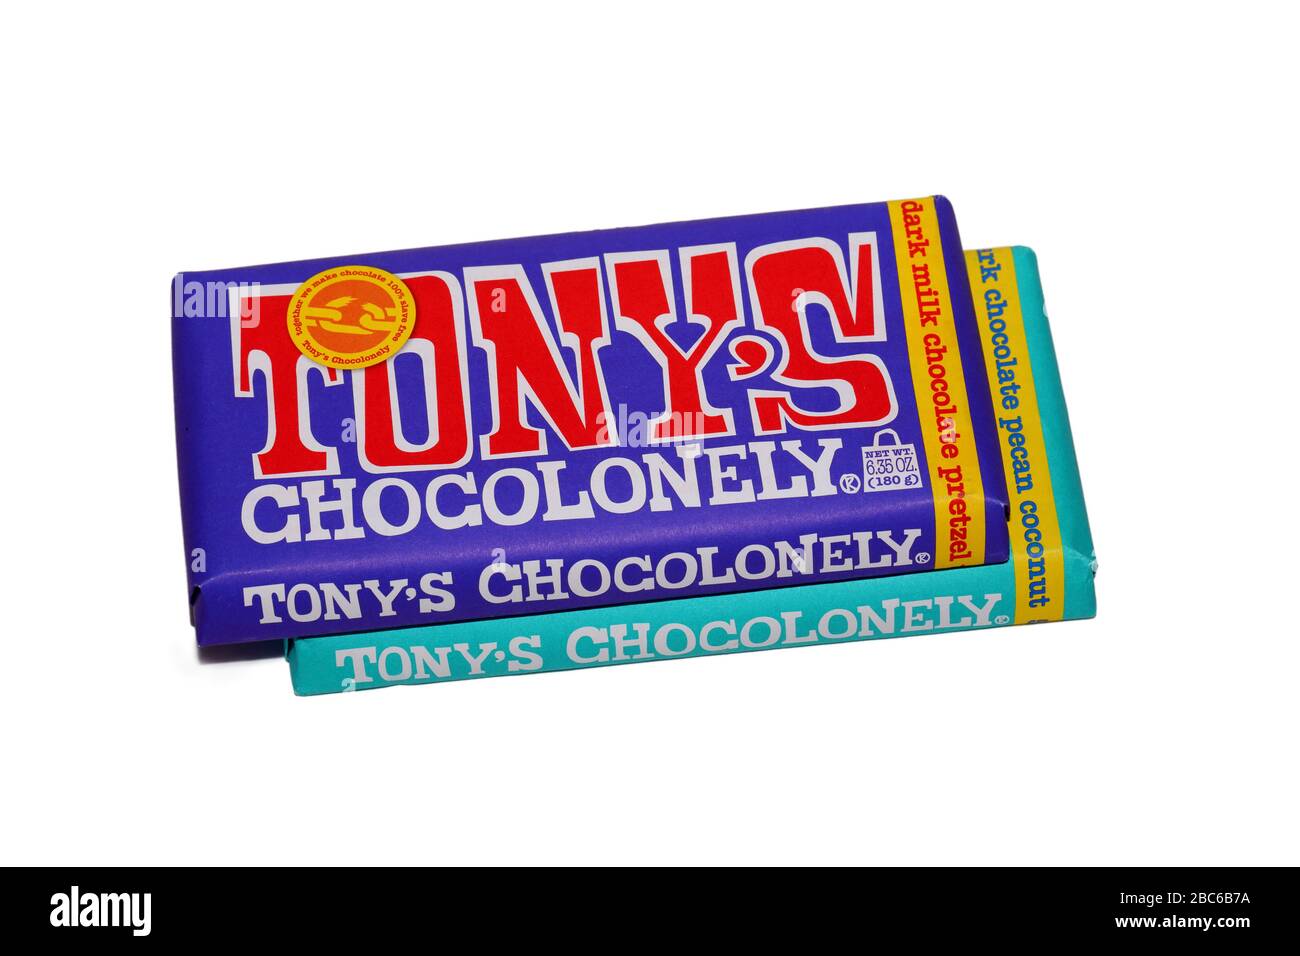 Barre di barrette di cioccolato cioccolato cioccolato Tony's isolate su sfondo bianco. Immagine ritagliata per illustrazione e uso editoriale. Foto Stock